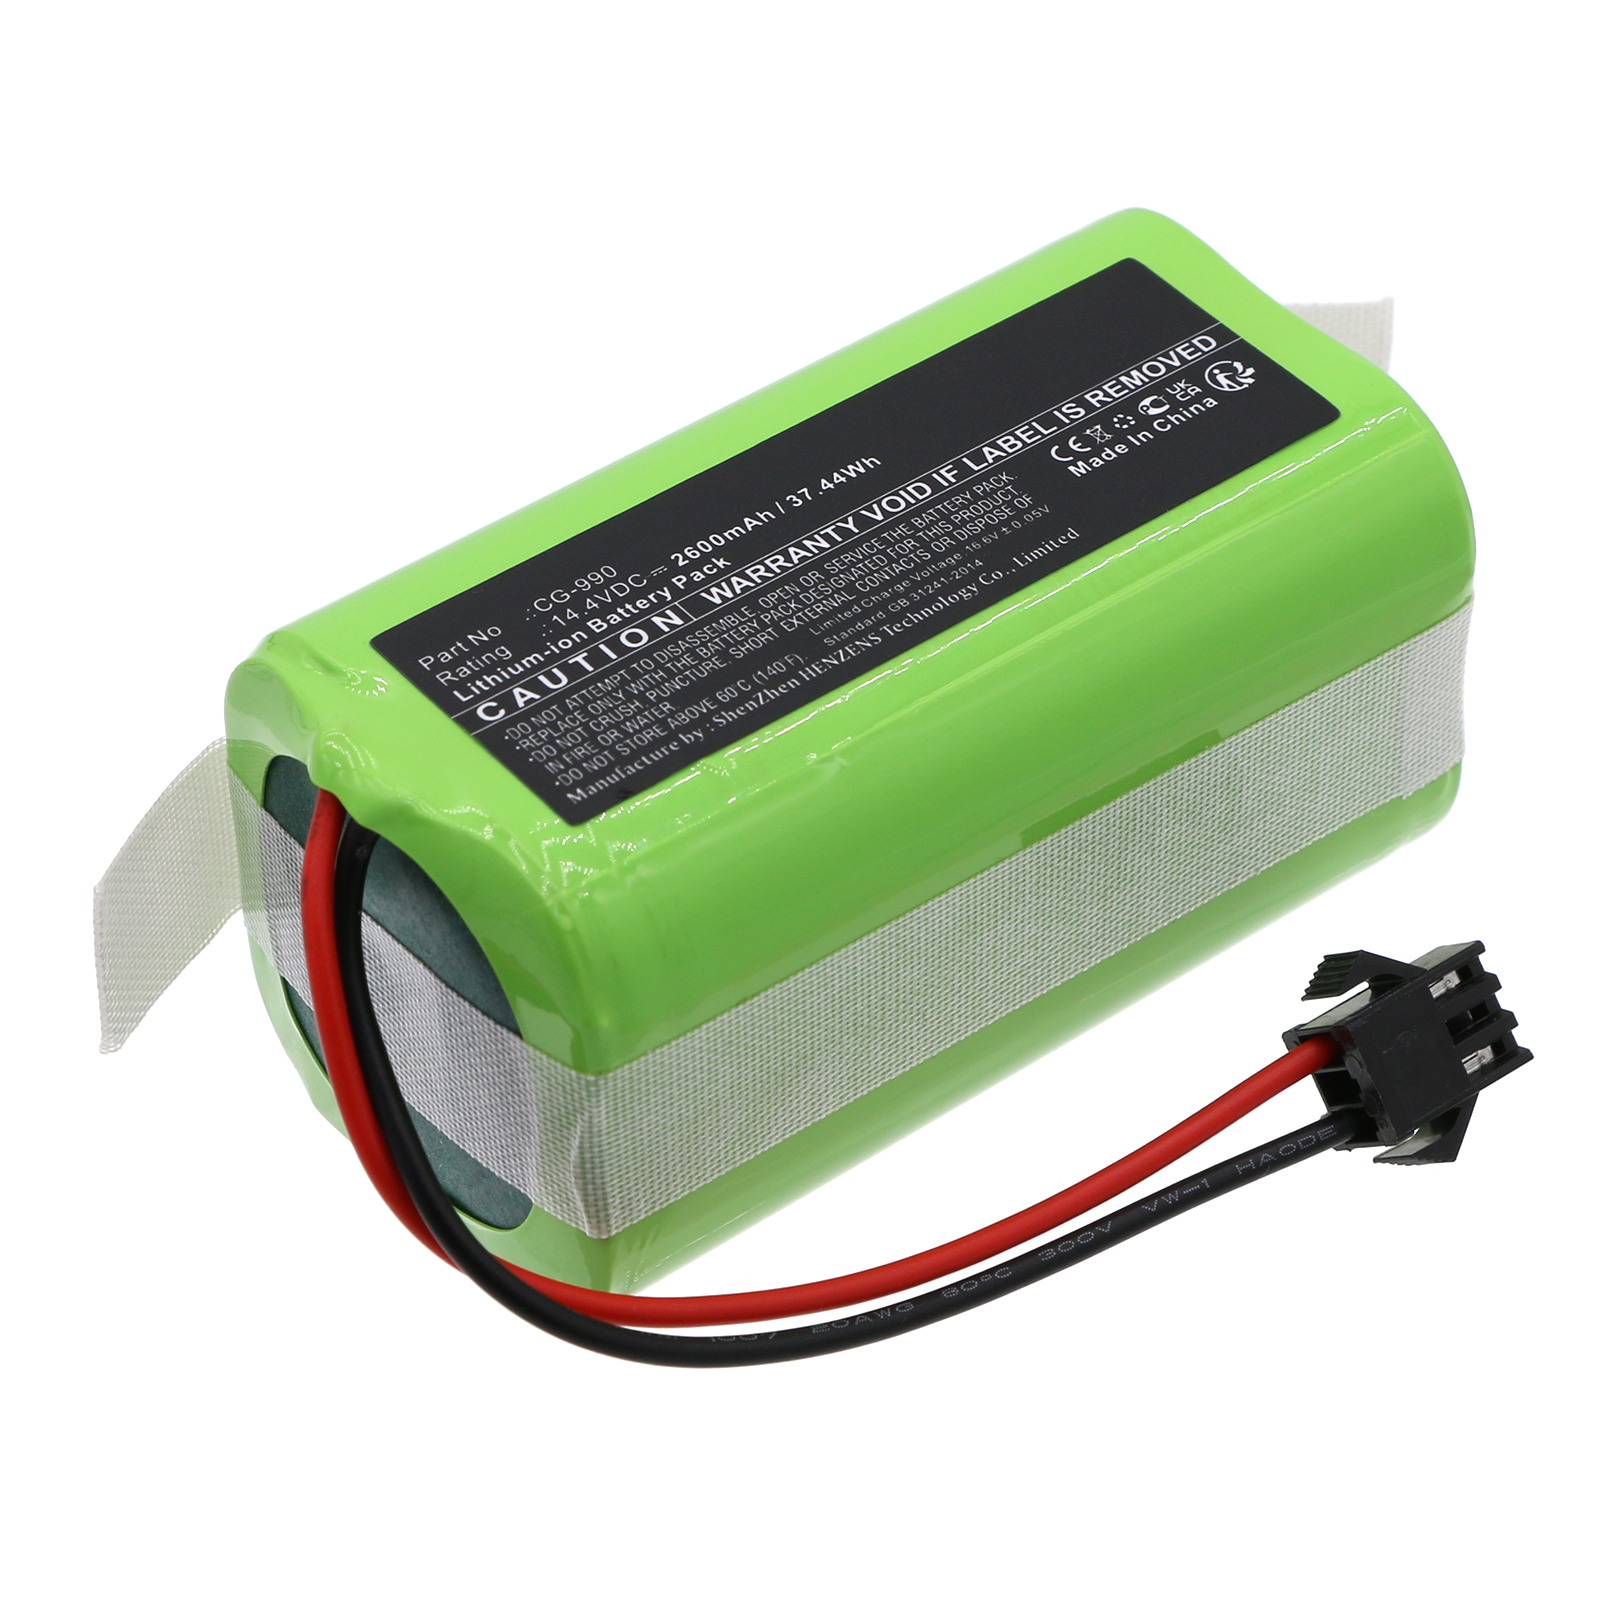 Synergy Digital Vacuum Cleaner Battery, Compatible with Infiniton CG-990 Vacuum Cleaner Battery (Li-ion, 14.4V, 2600mAh)